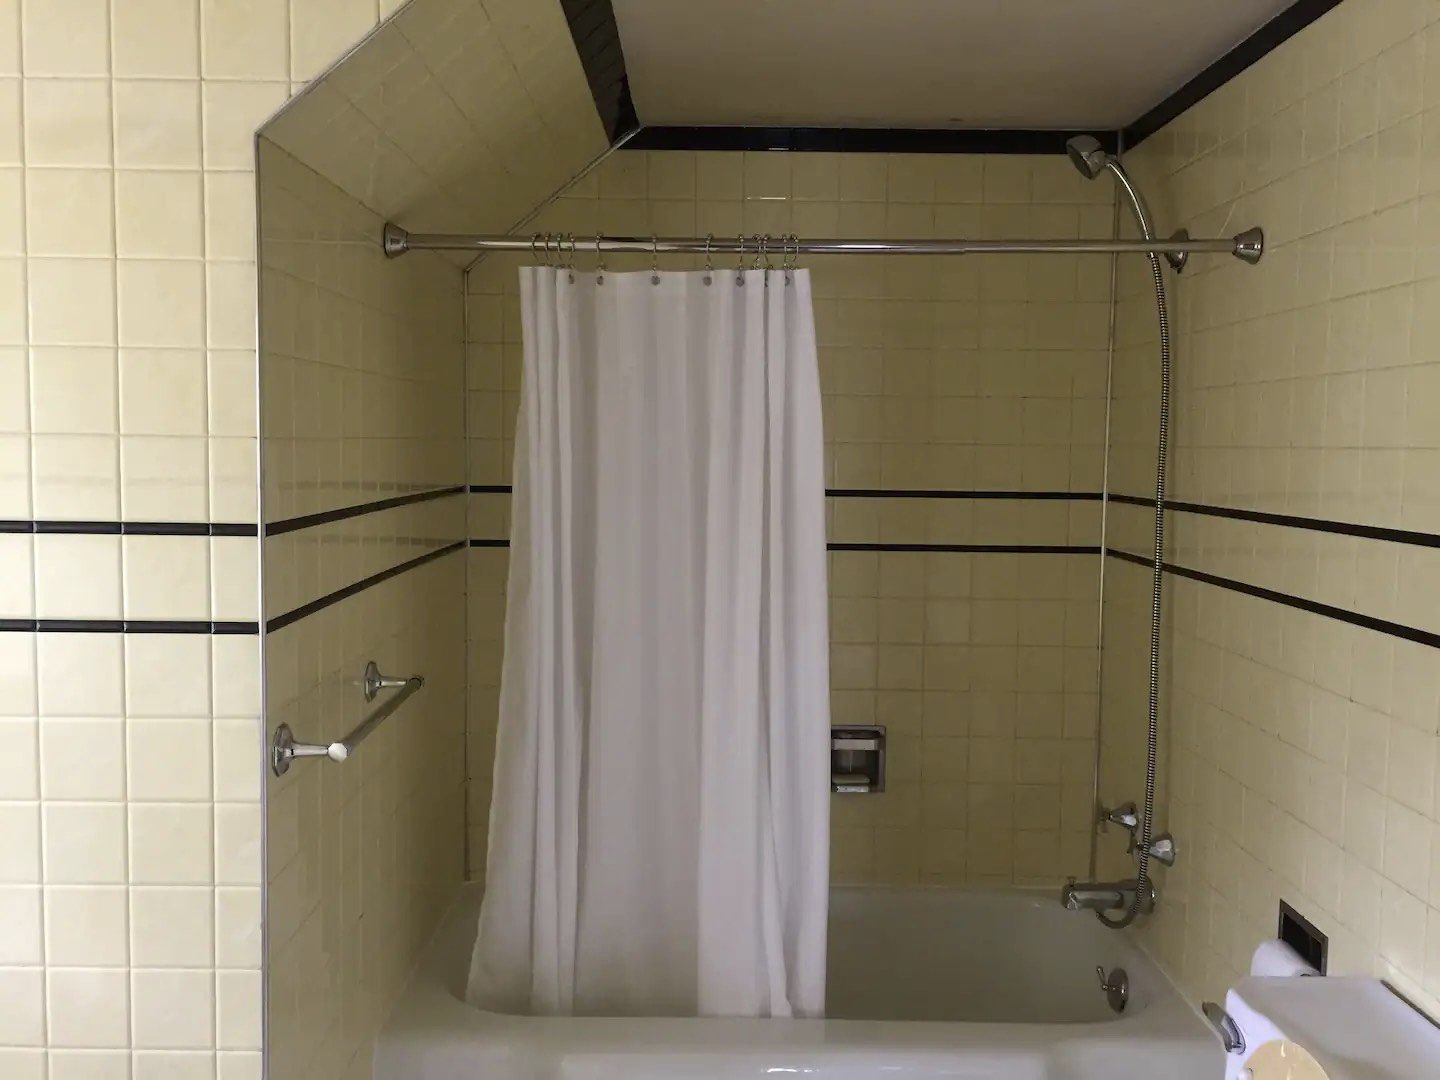 visite deco appartement mid century modern salle de bain baignoire robinetterie chromée rideau de douche simple blanc carrelage jaune pastel